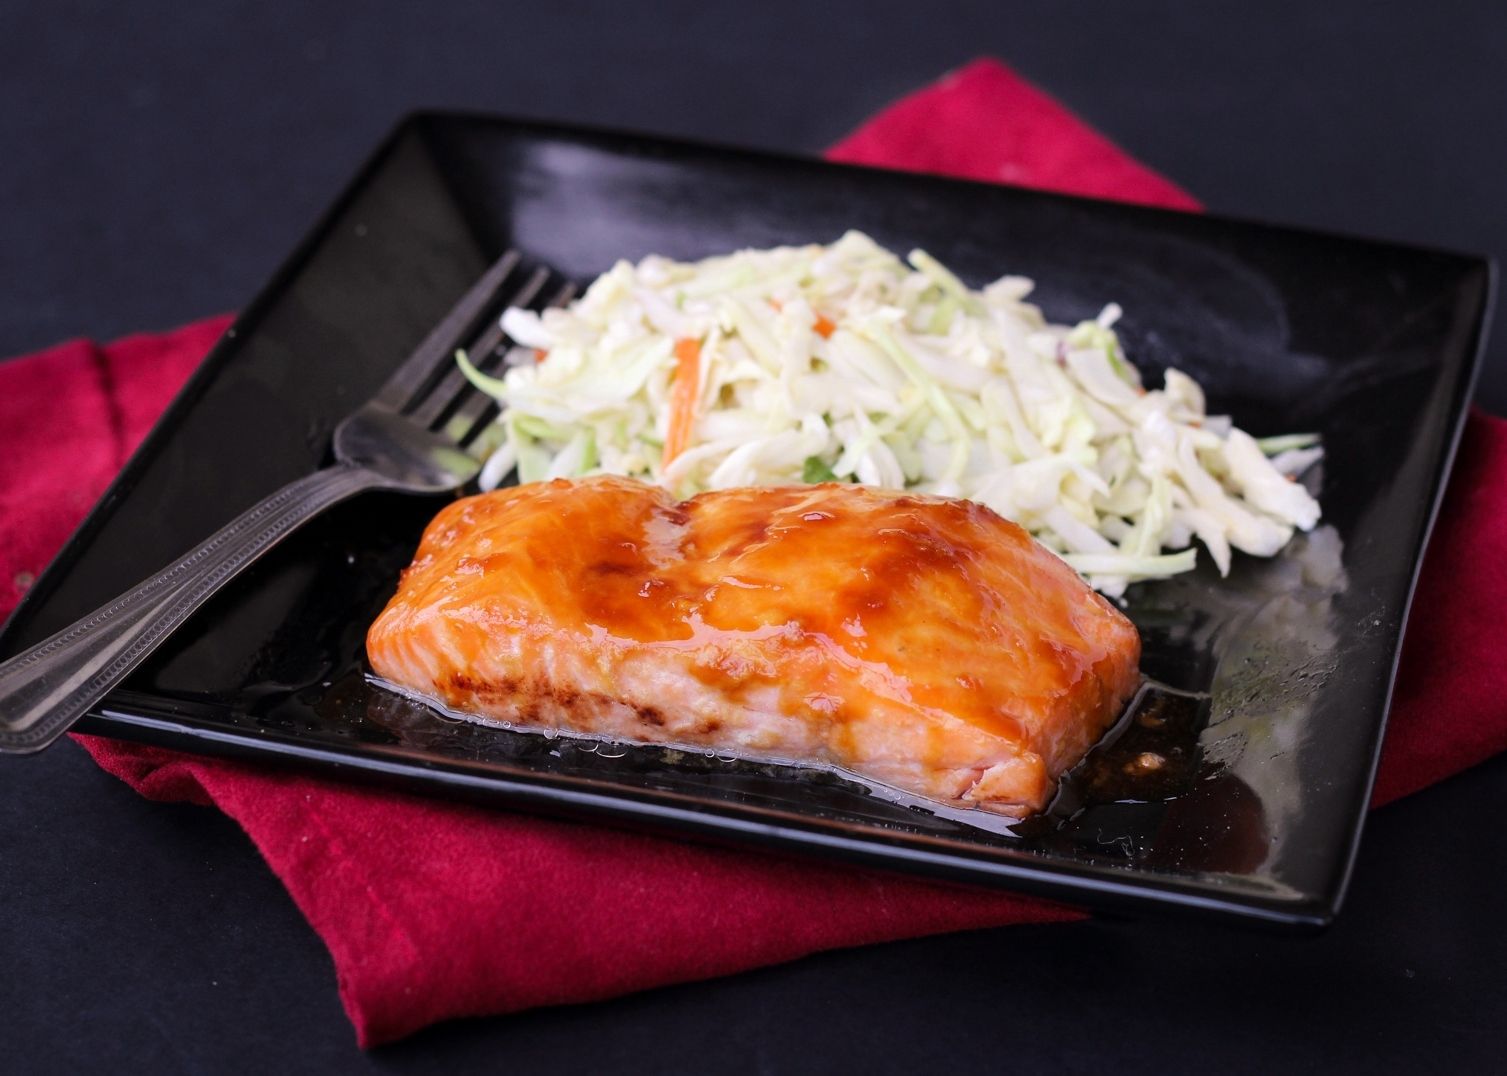 Ponzu Glazed Salmon with Miso Slaw